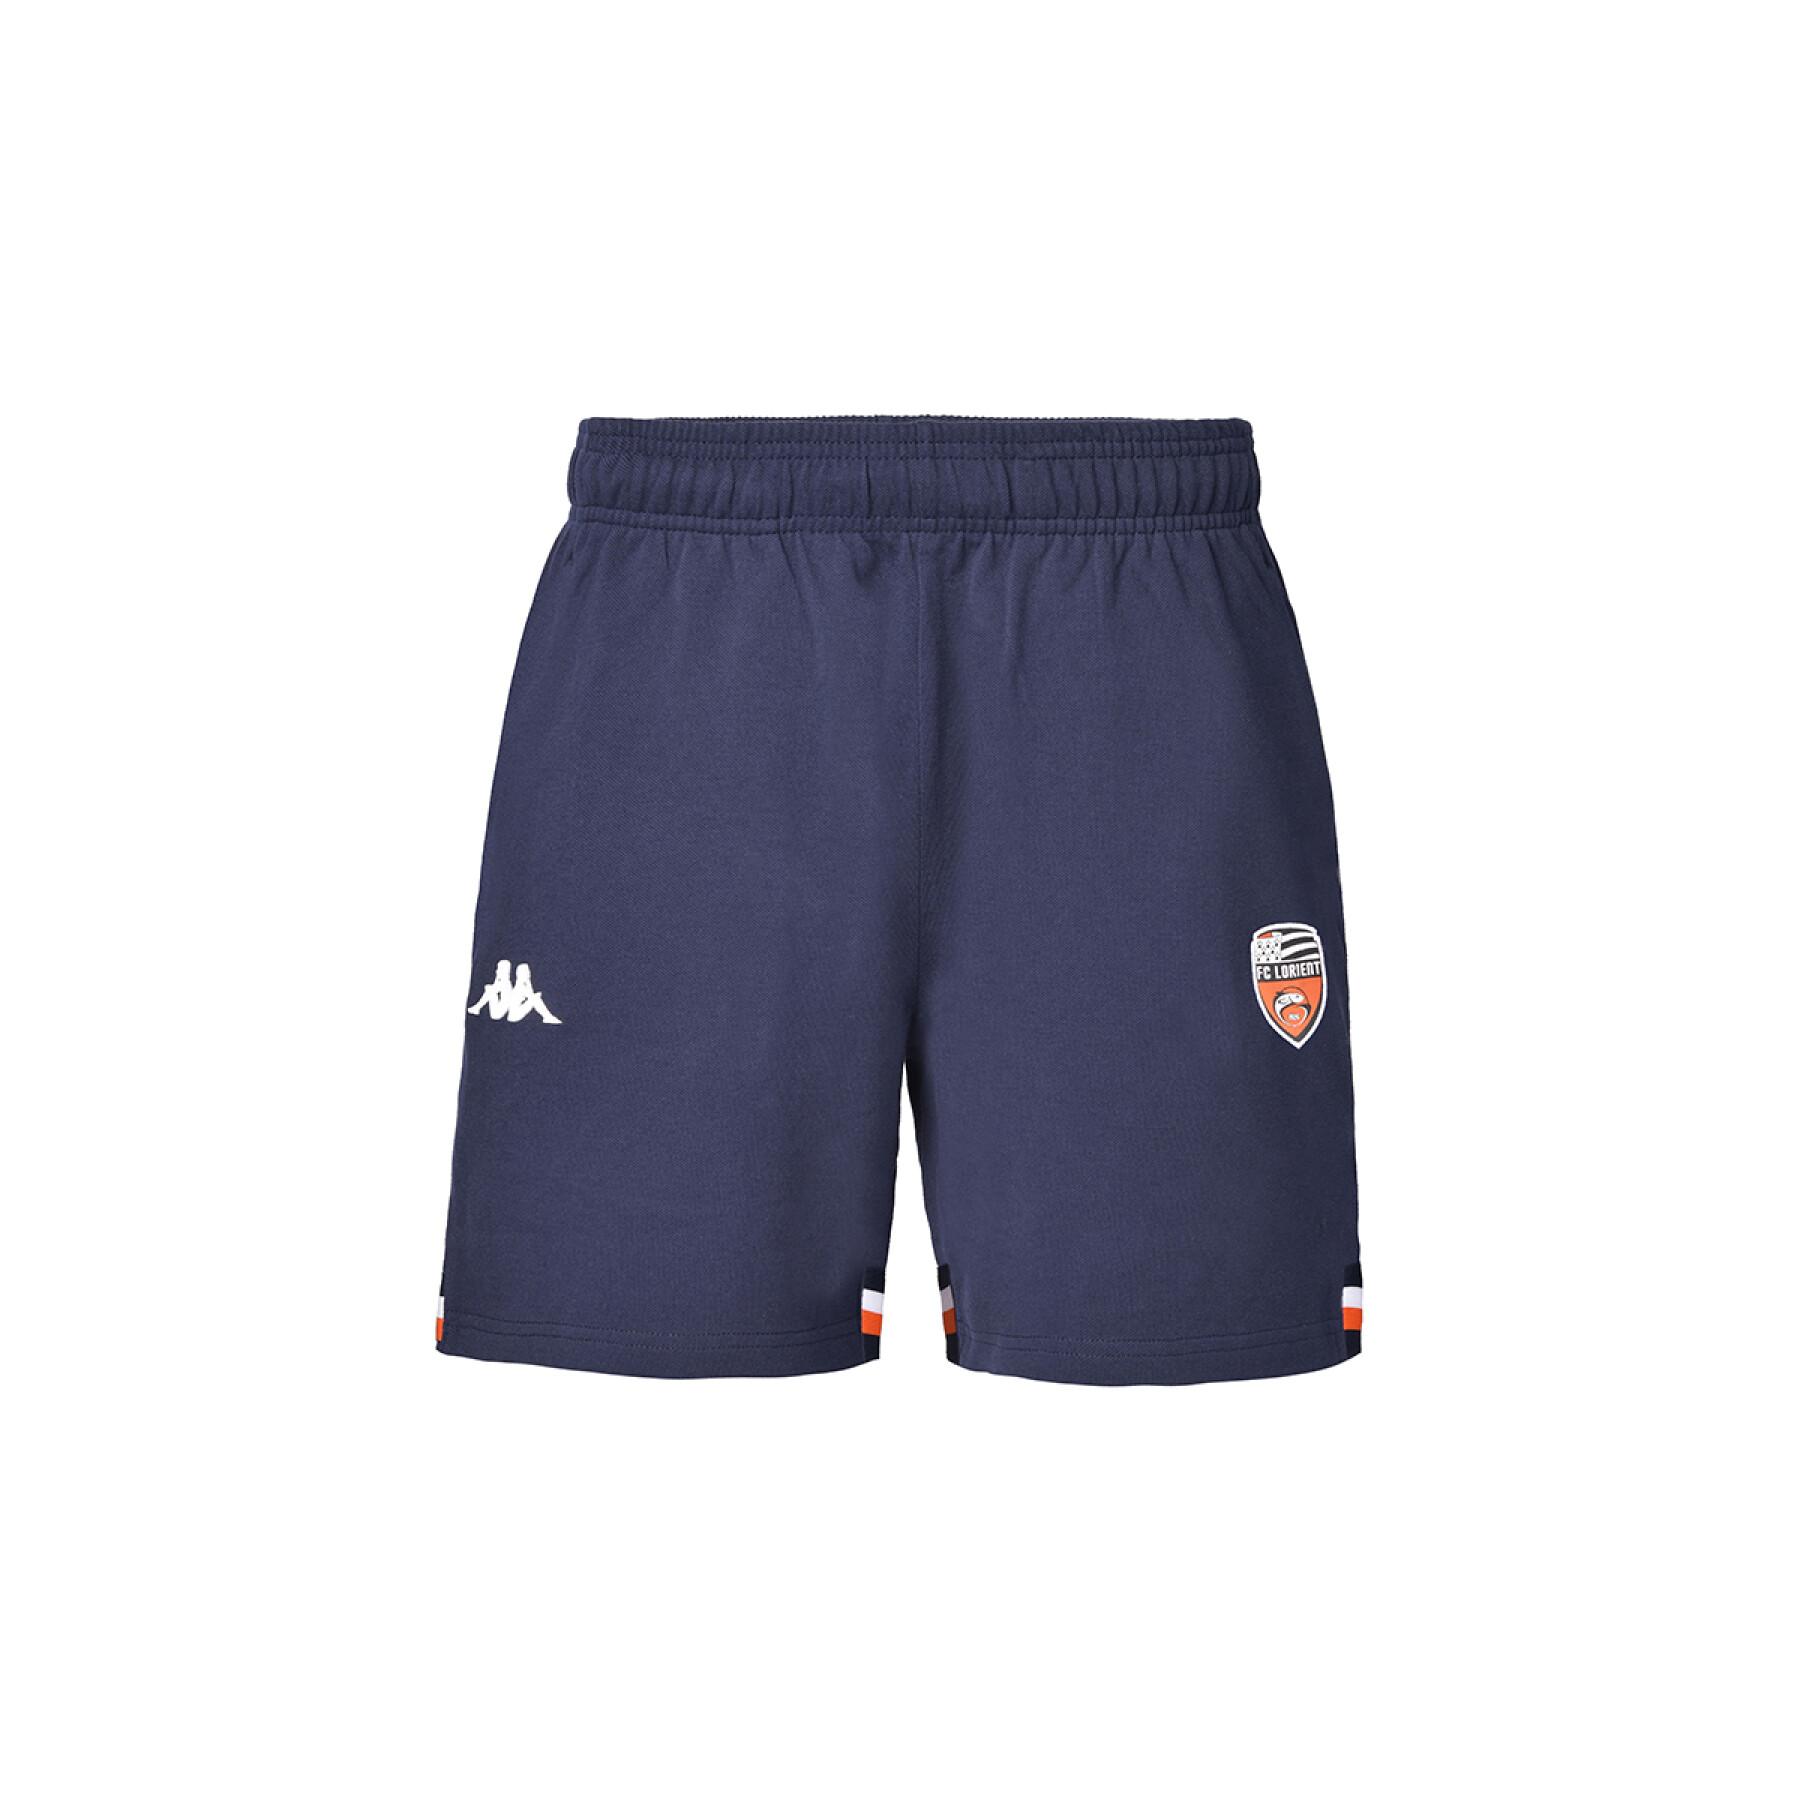 Kinder shorts fc Lorient 2021/22 cavatelli